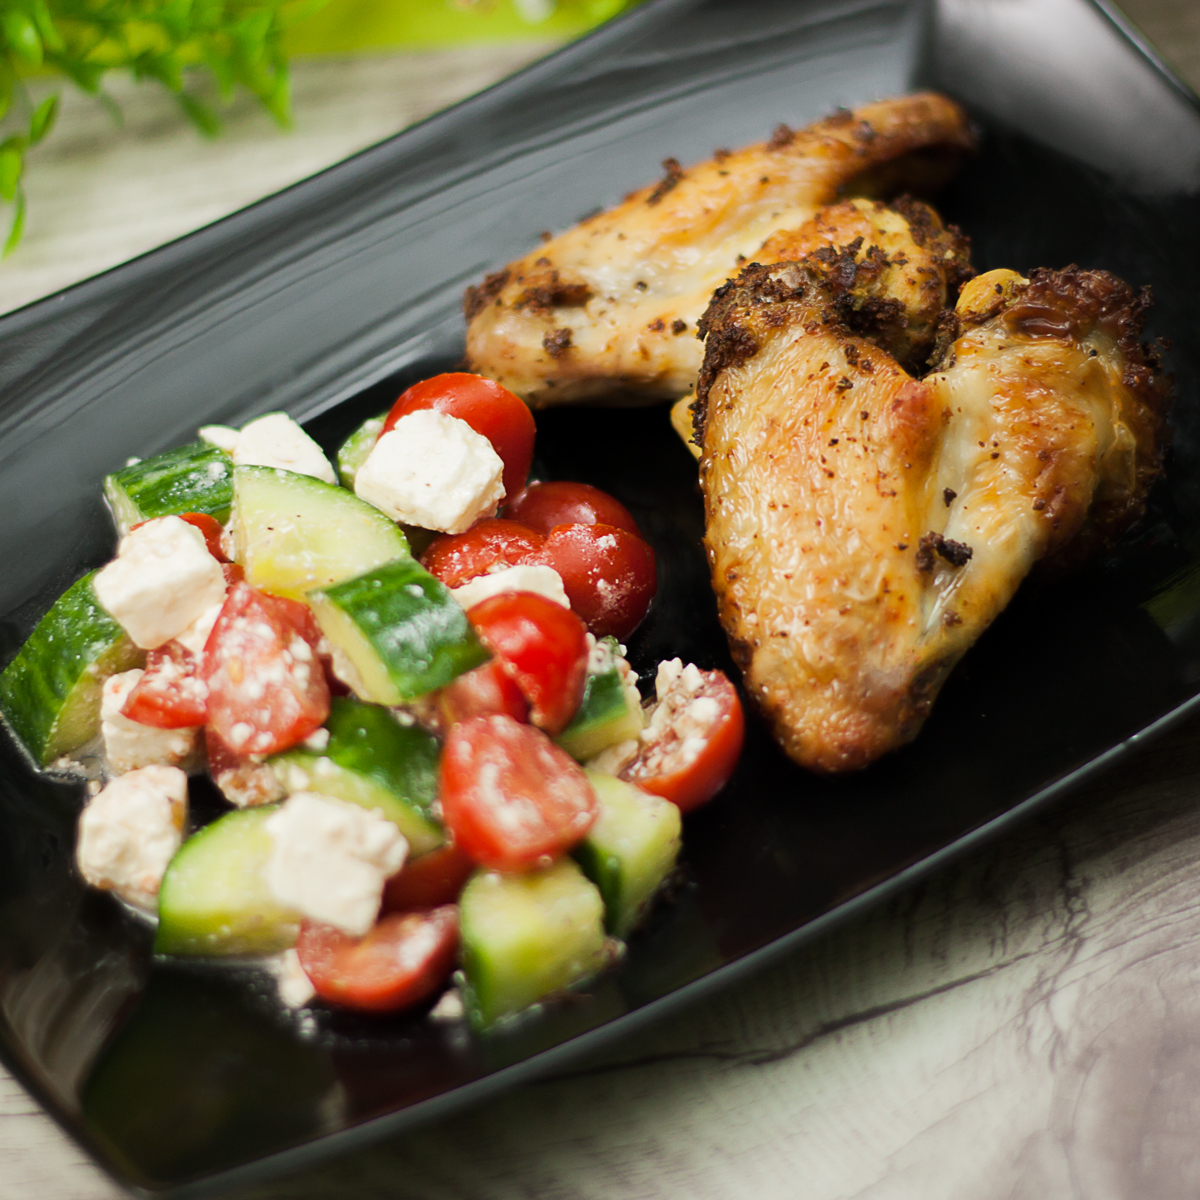 Das Hähnchenflügel ist ein leckeres Rezept für den Grill. Das Gericht ist perfekt für den Sommer und schmeckt einfach klasse.